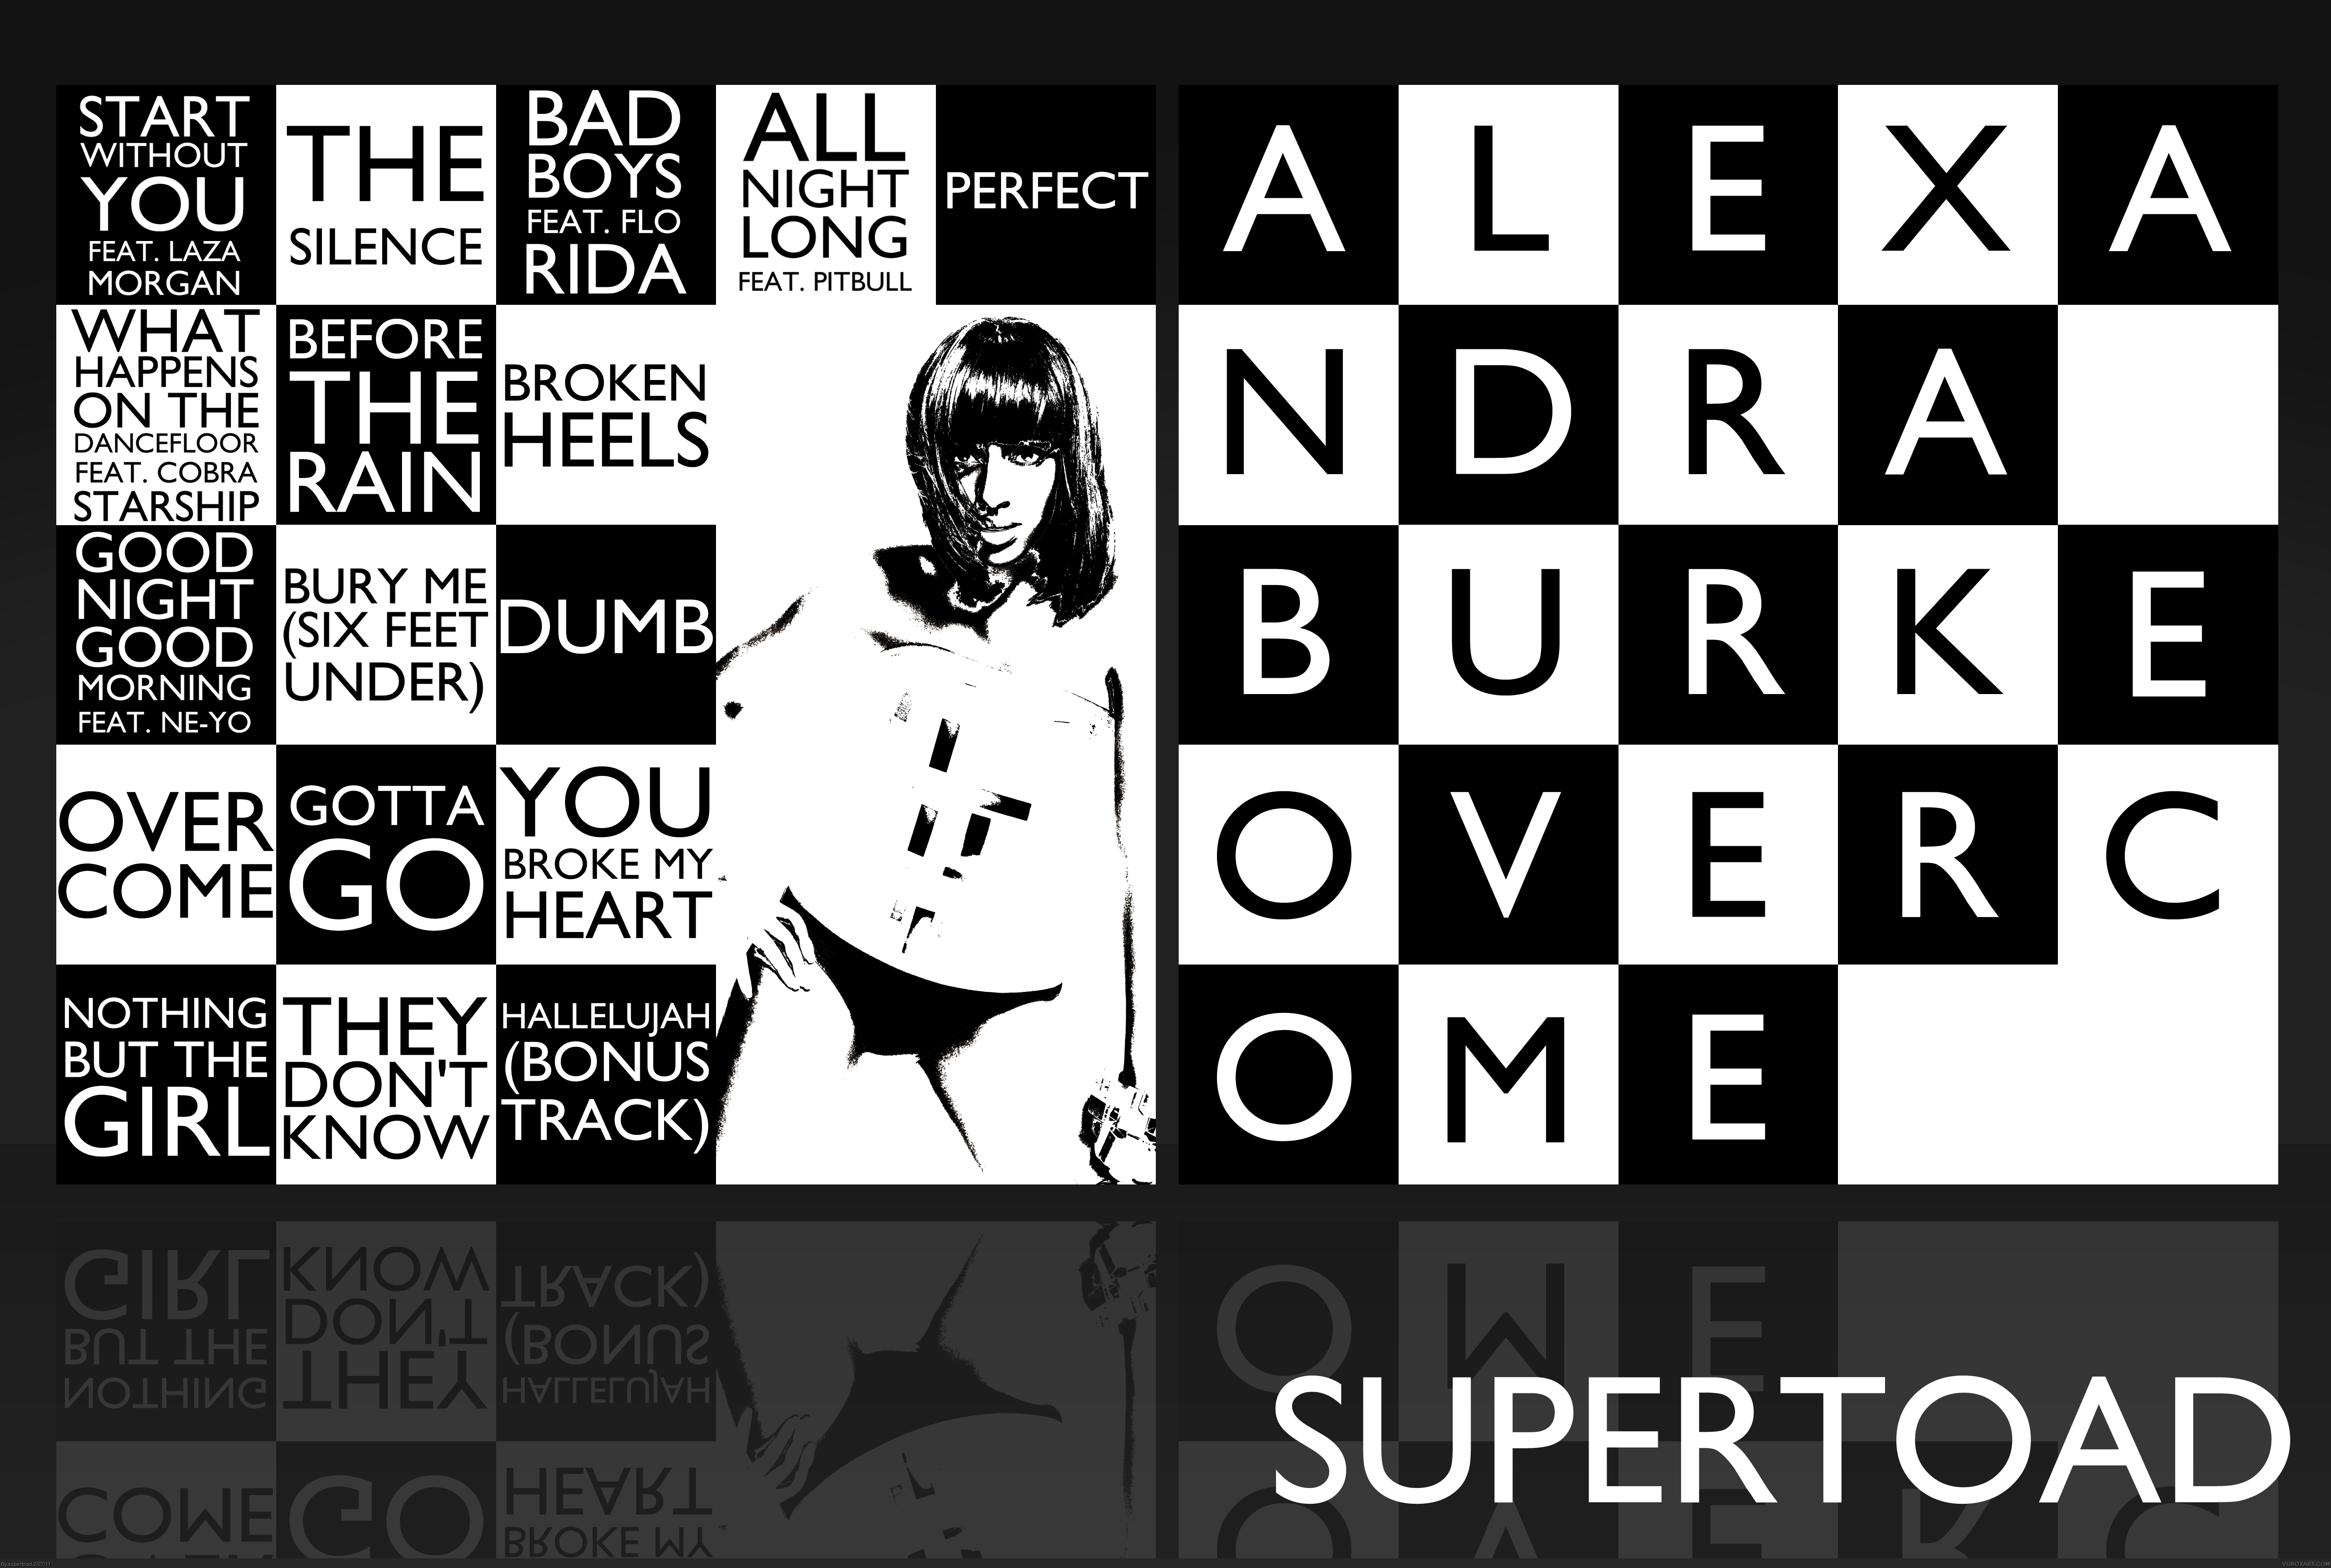 Alexandra Burke - Overcome box cover